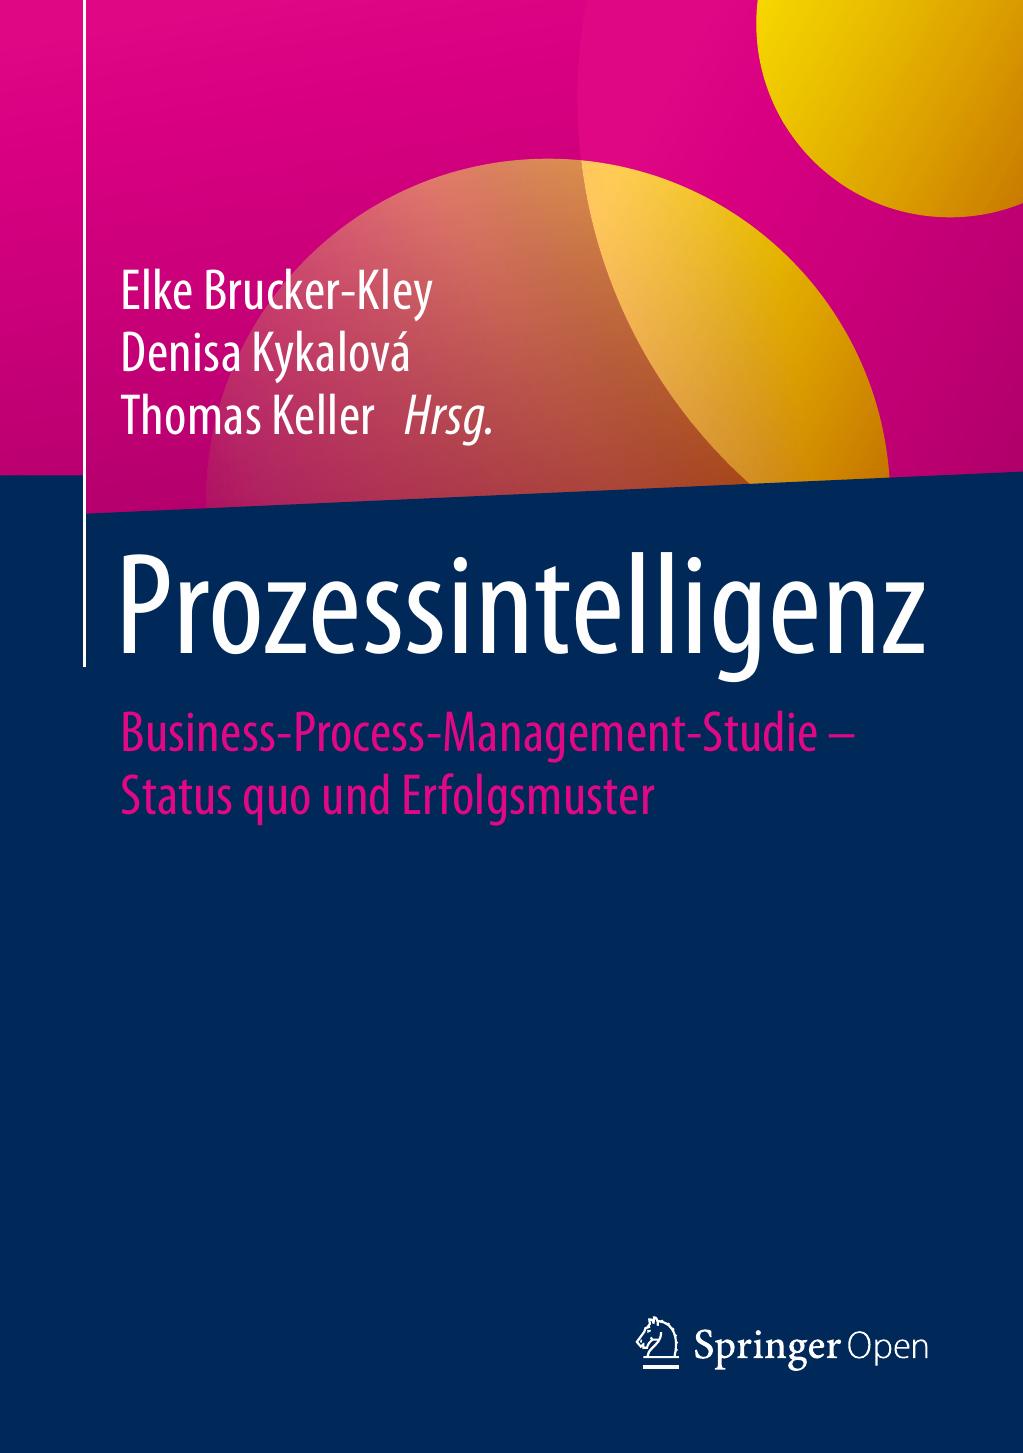 Prozessintelligenz: Business-Process-Management-Studie – Status quo und Erfolgsmuster